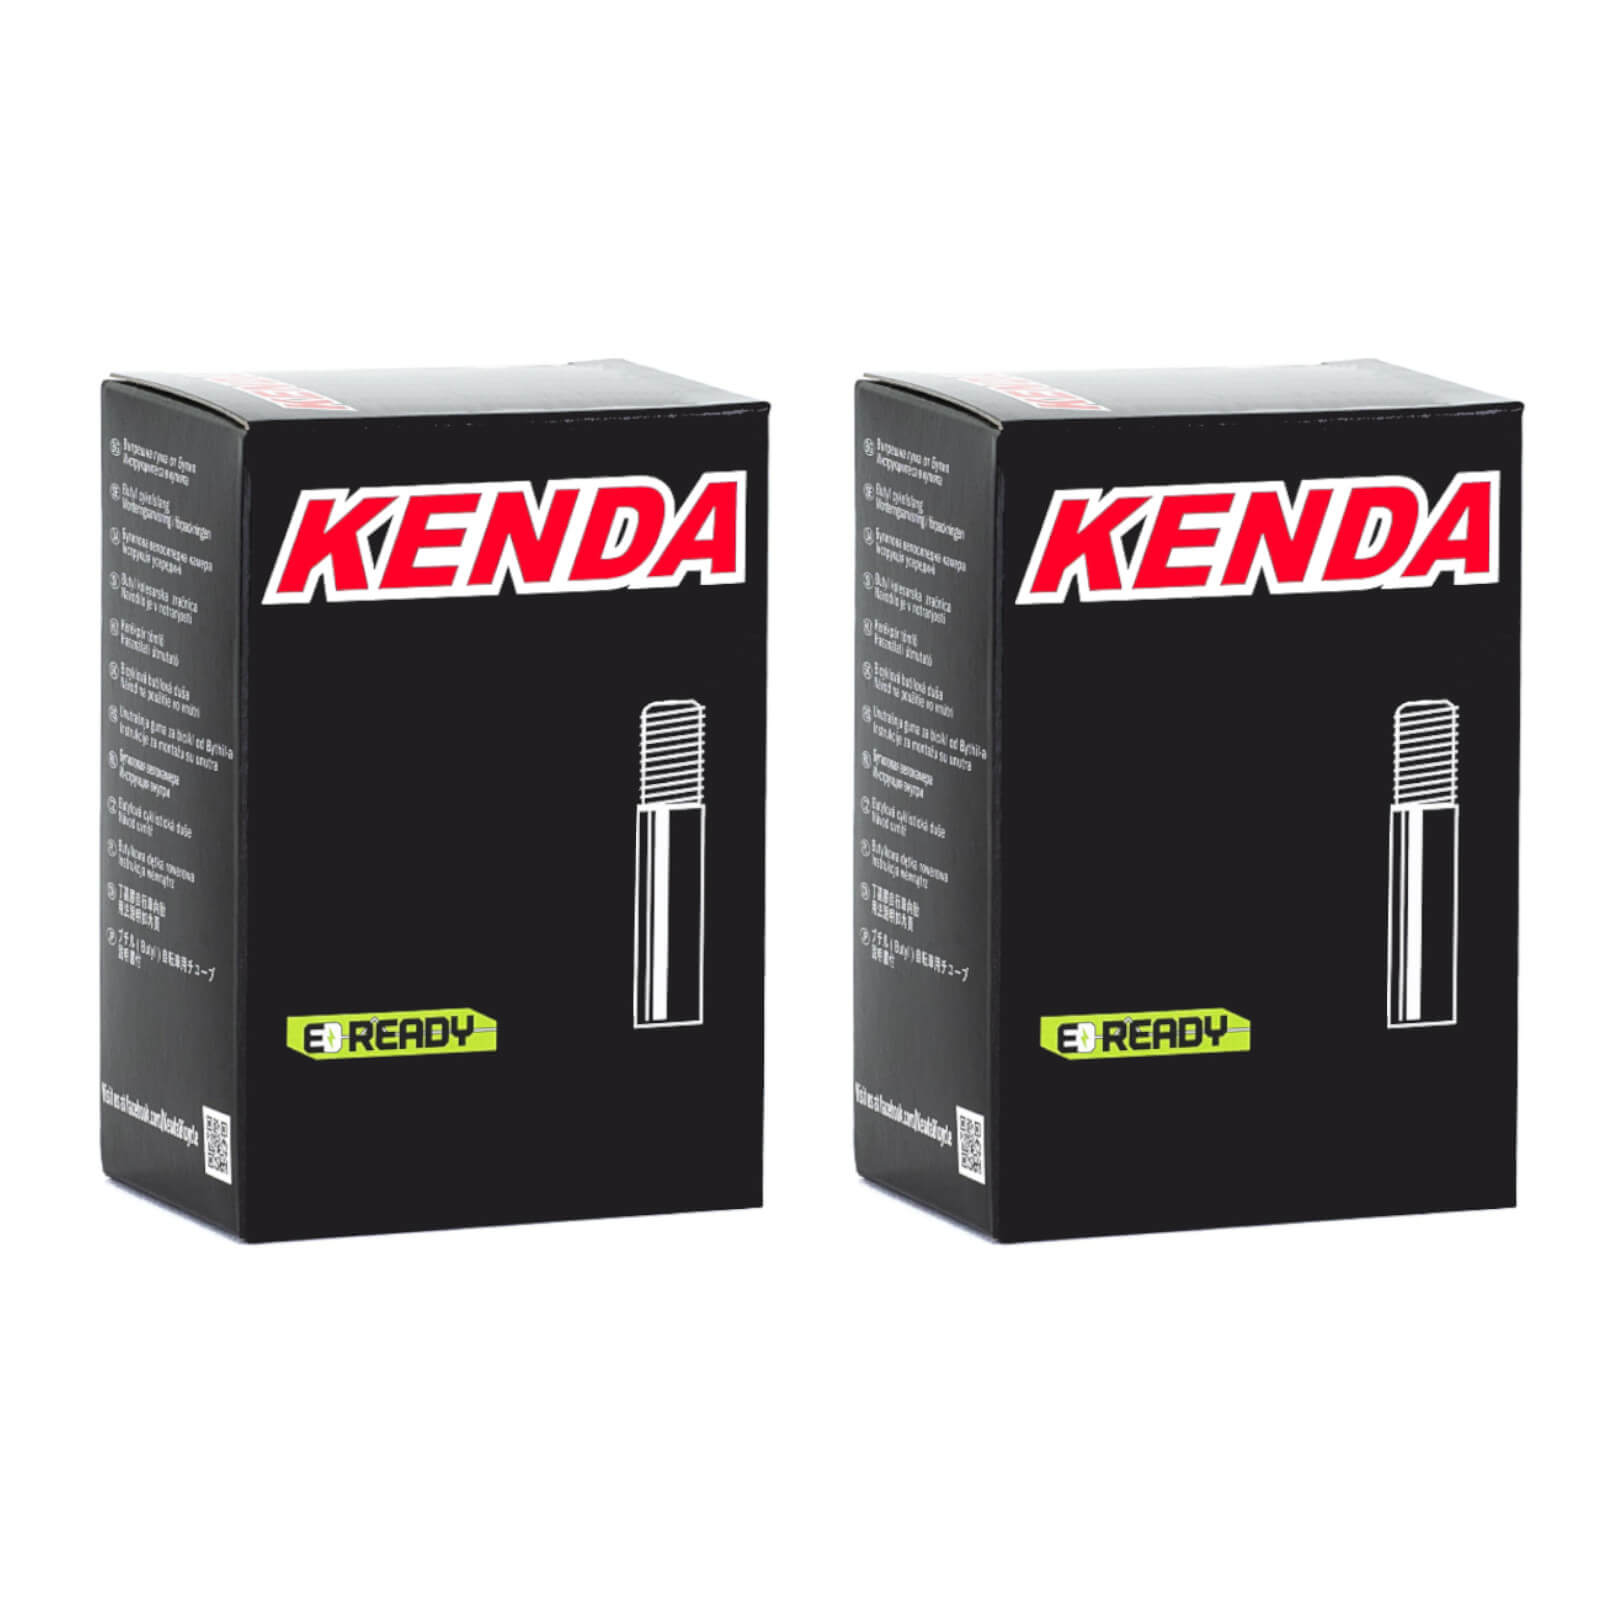 Kenda 29x2.4-2.8" 29 Inch Schrader Valve Bike Inner Tube Pack of 2